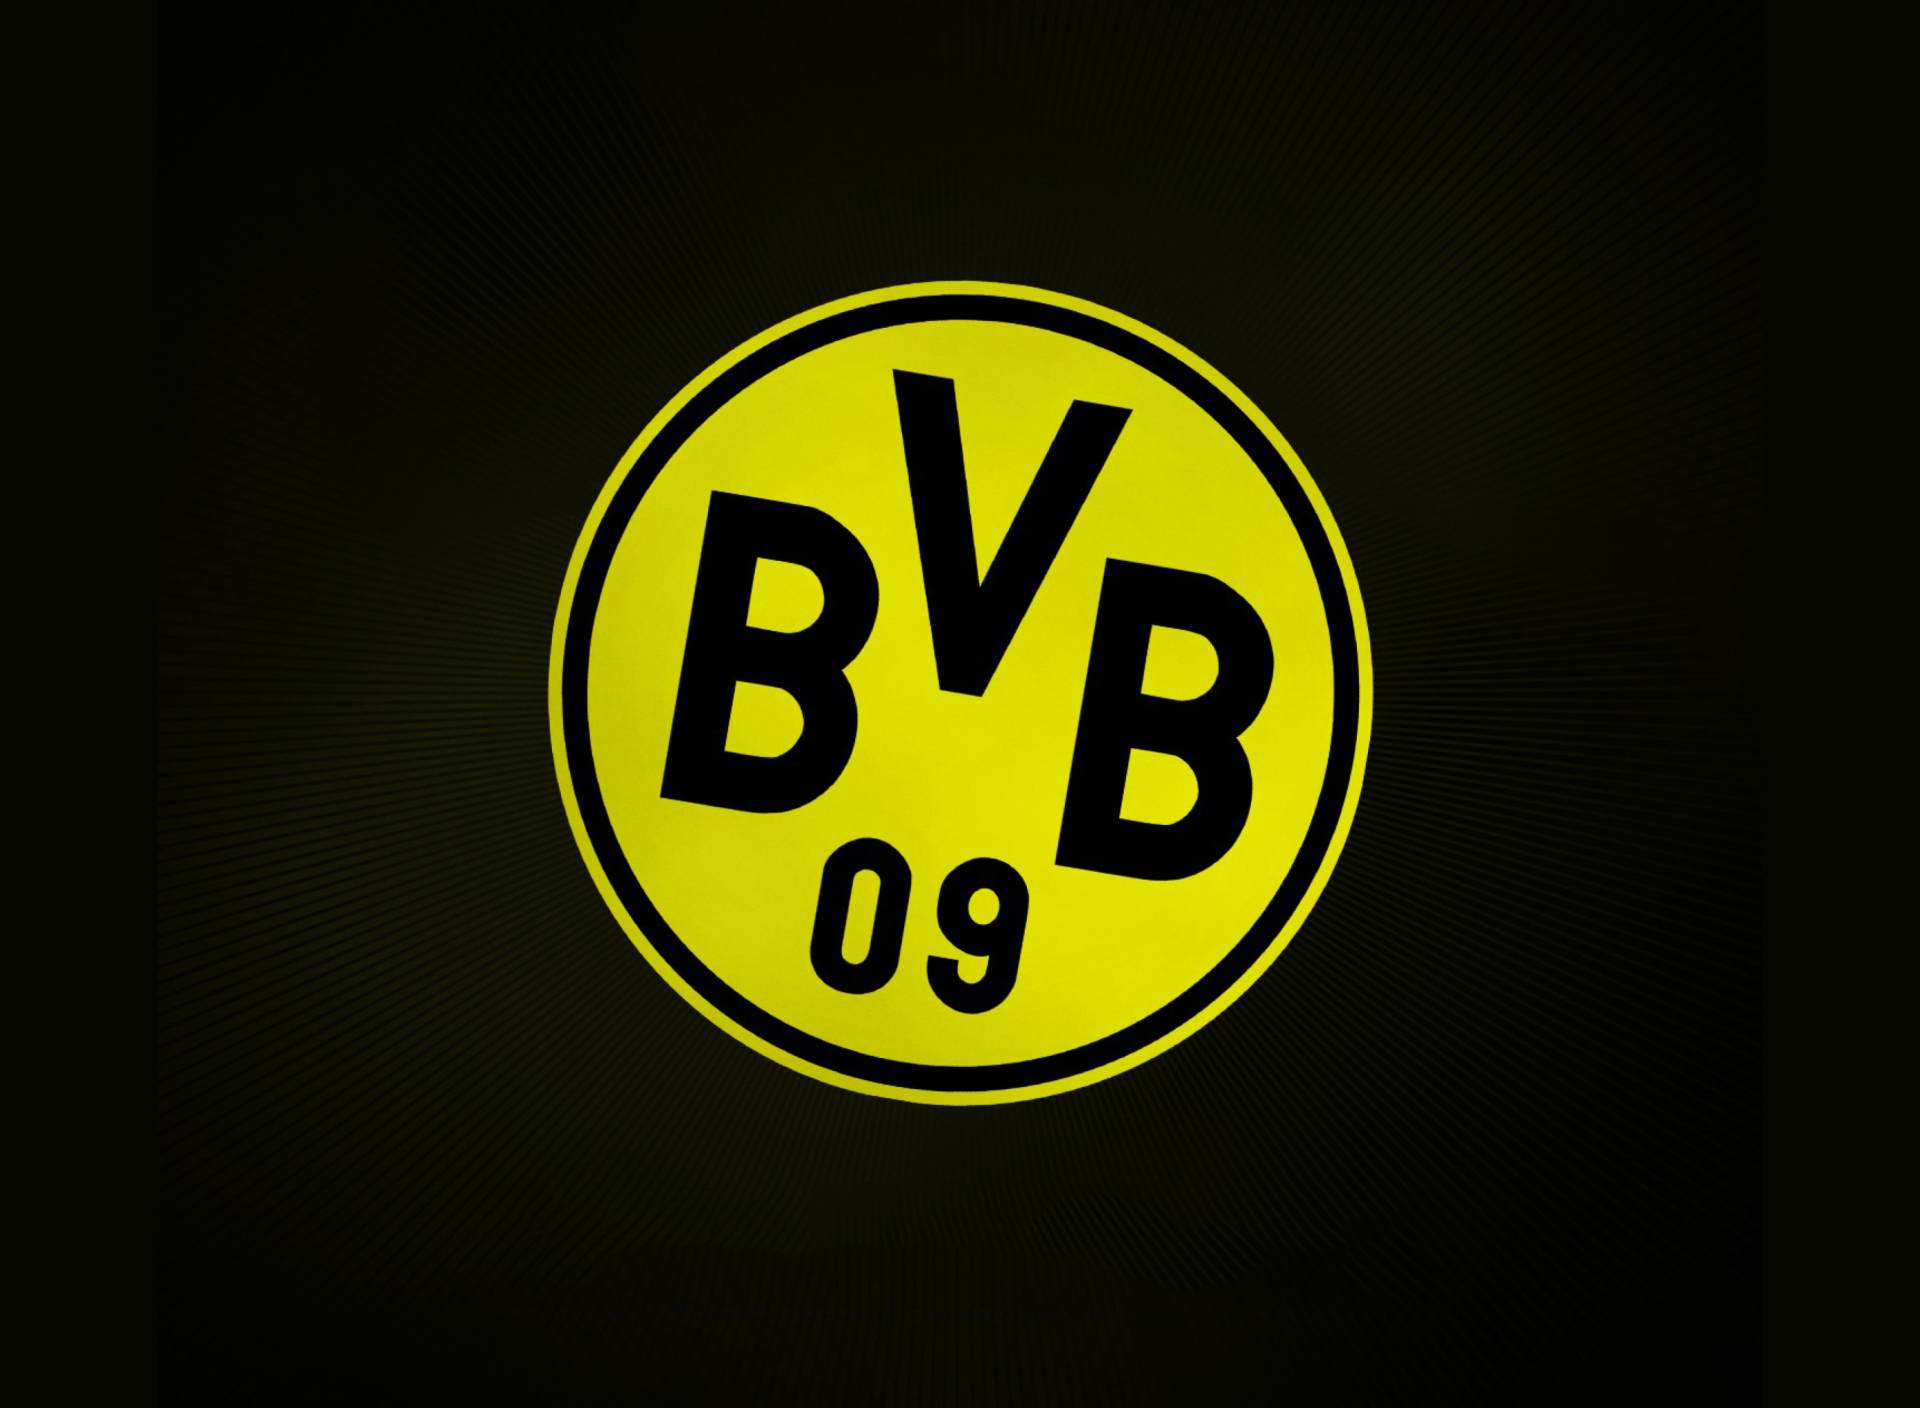 Sfondi Borussia Dortmund - BVB 1920x1408